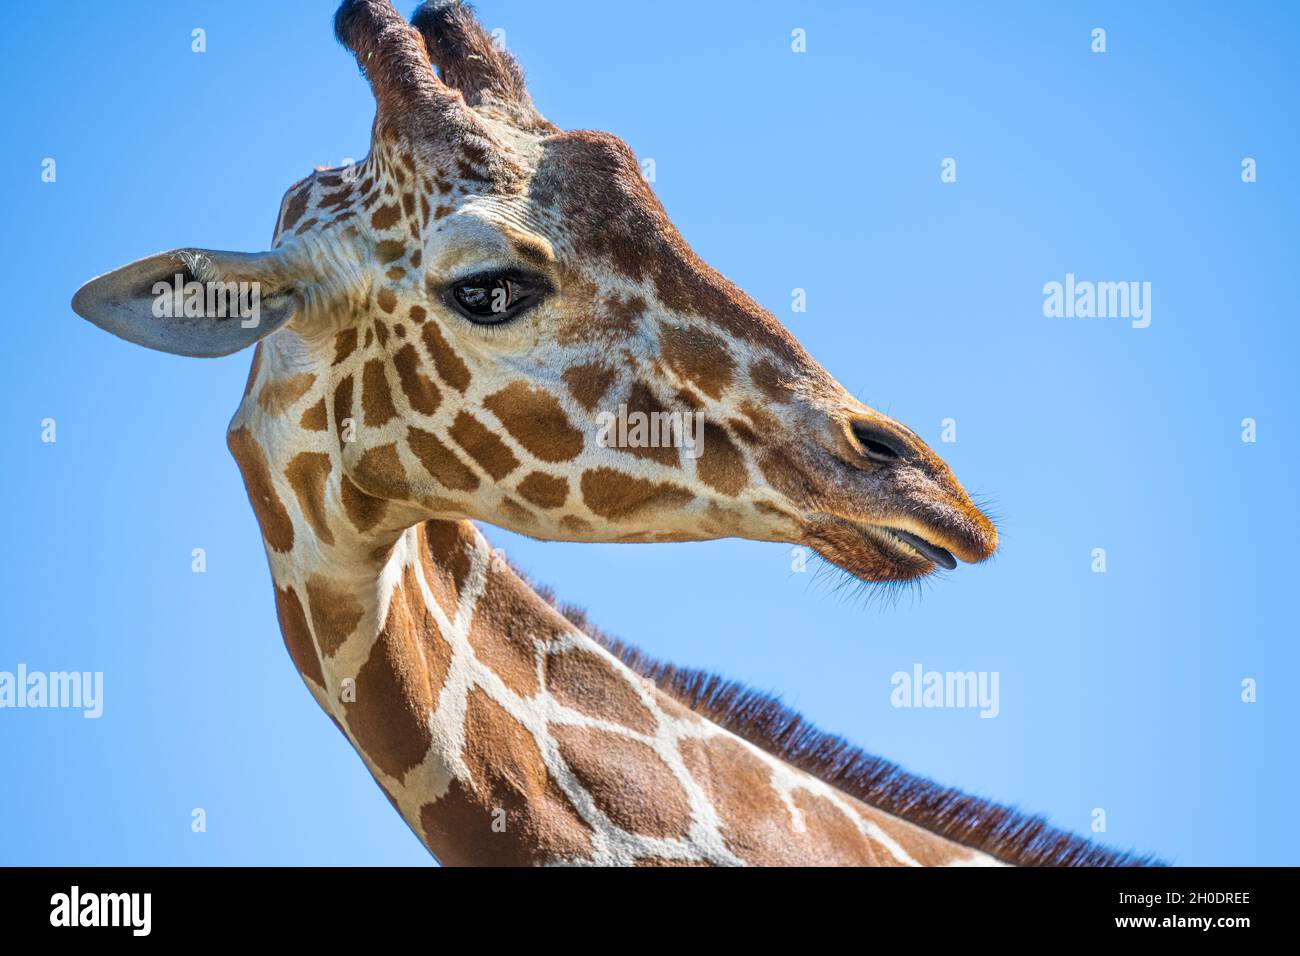 Giraffe (Giraffa camelopardalis) en gros plan au zoo d'Atlanta, dans l'habitat de la savane africaine à Atlanta, en Géorgie.(ÉTATS-UNIS) Banque D'Images